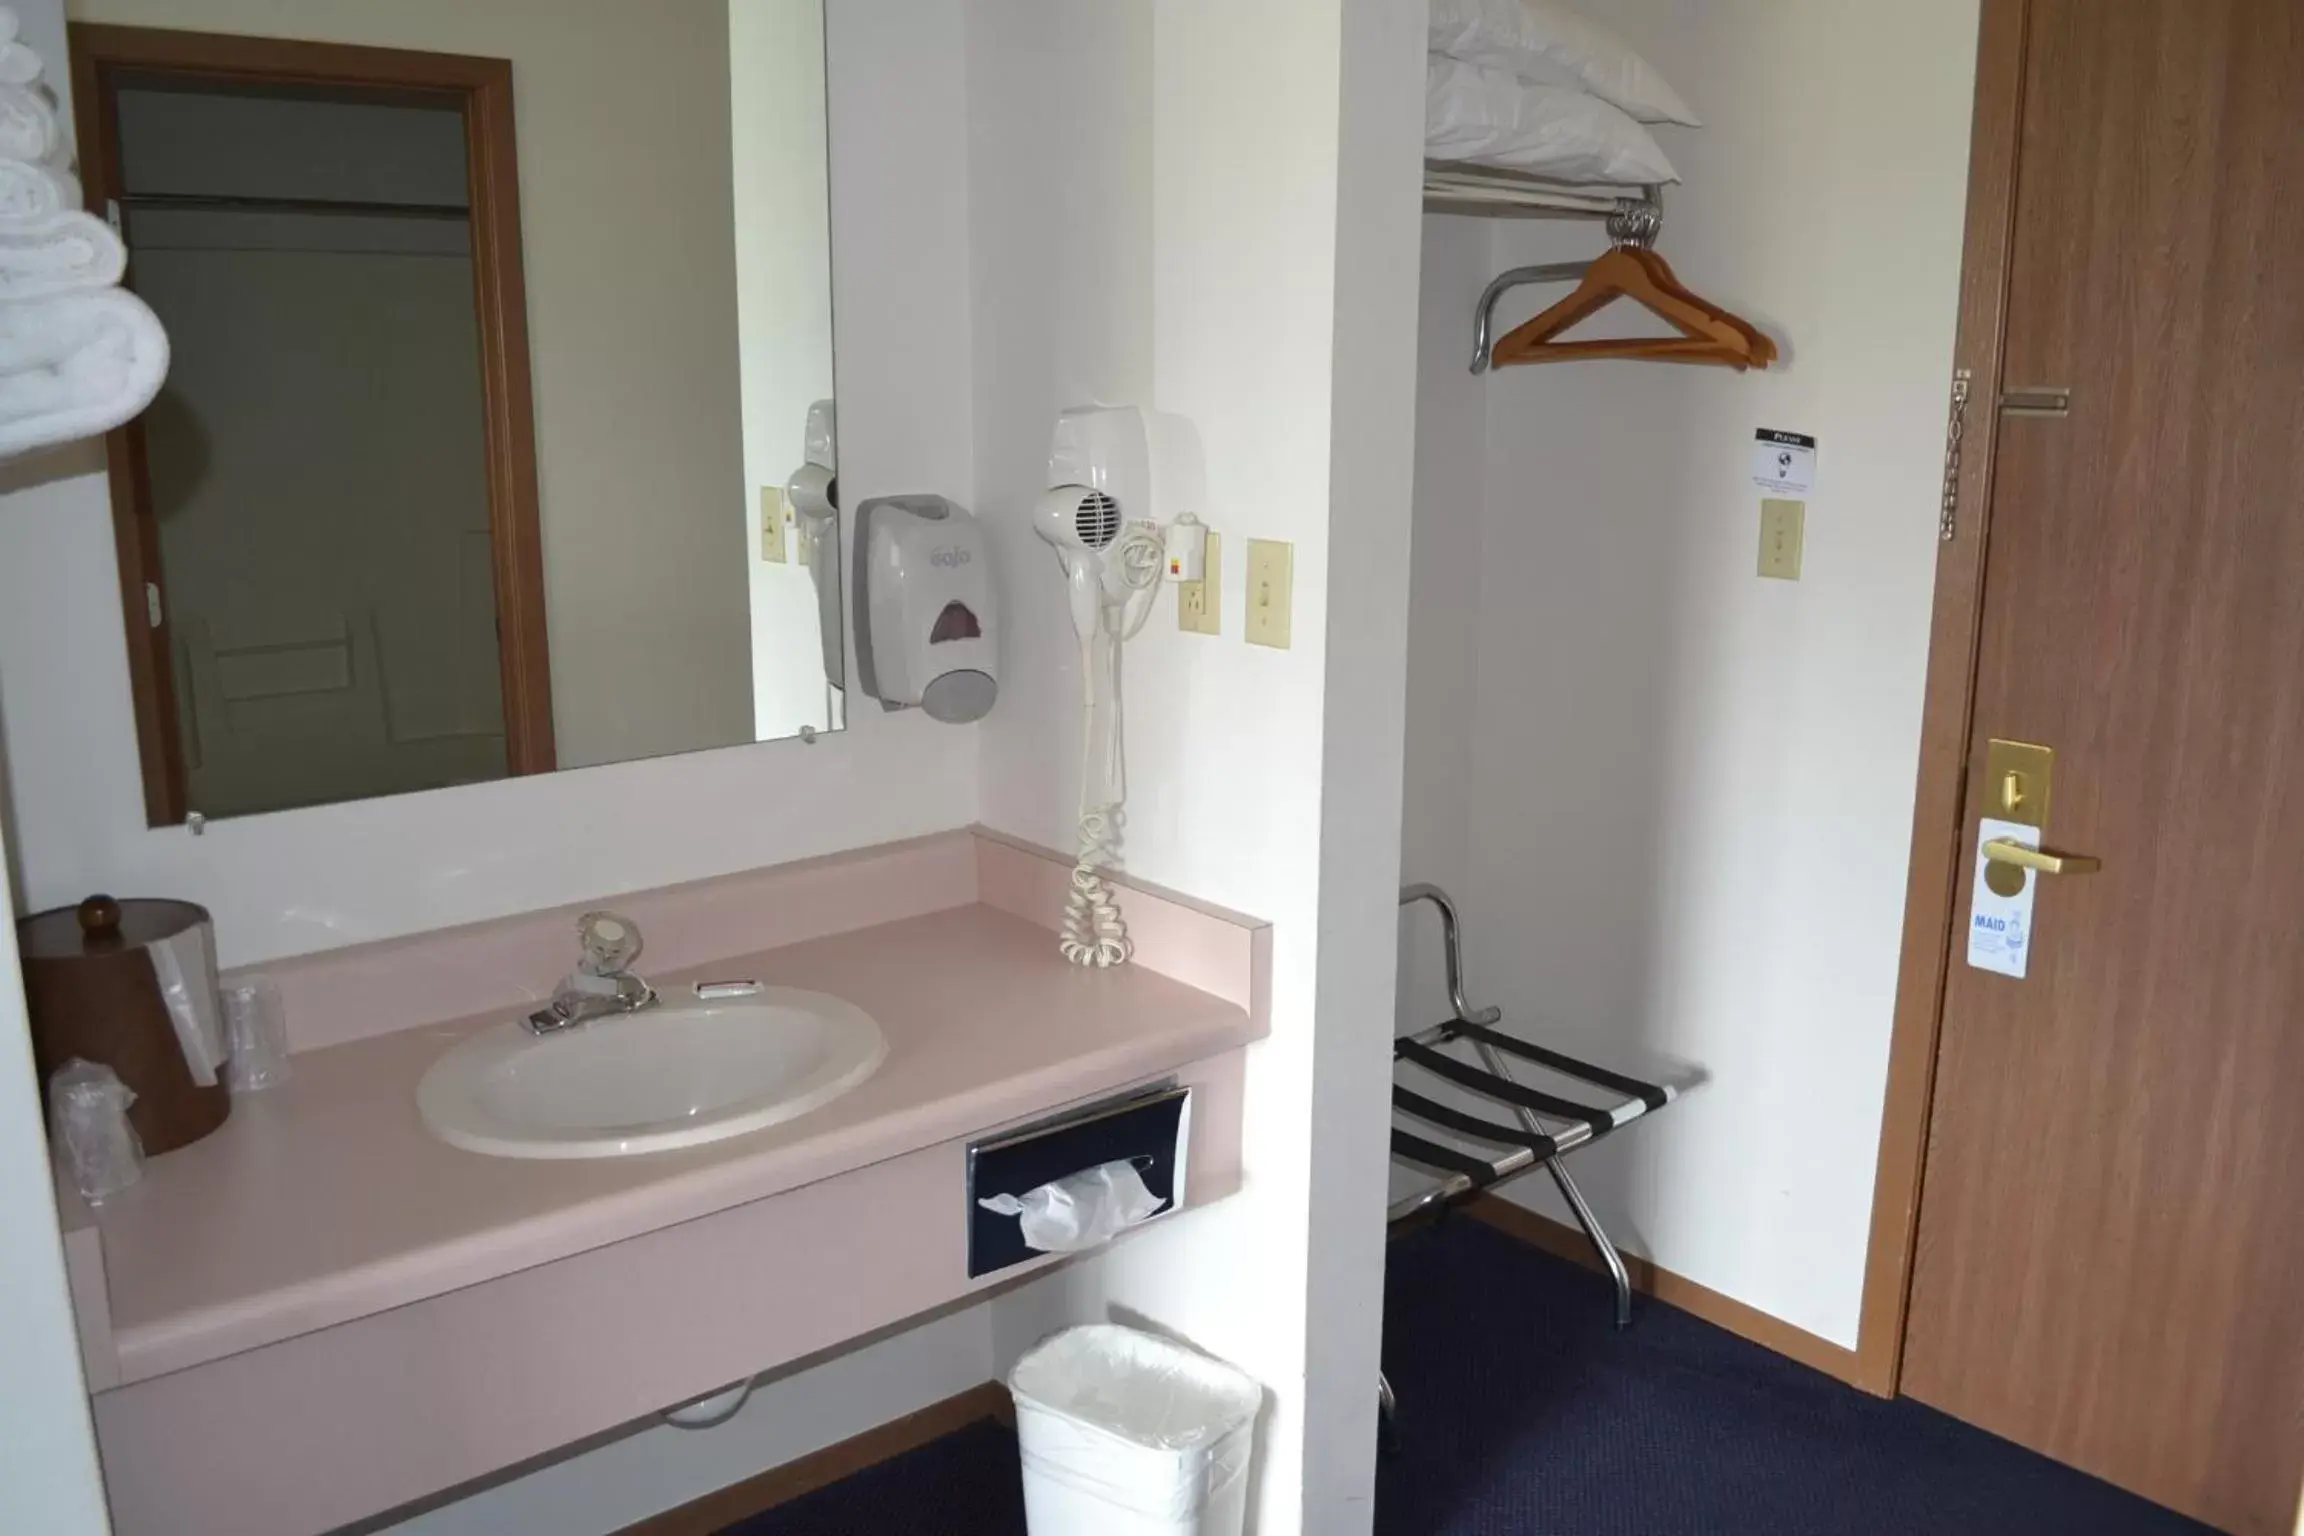 Bathroom in Sky Lodge Inn & Suites - Delavan